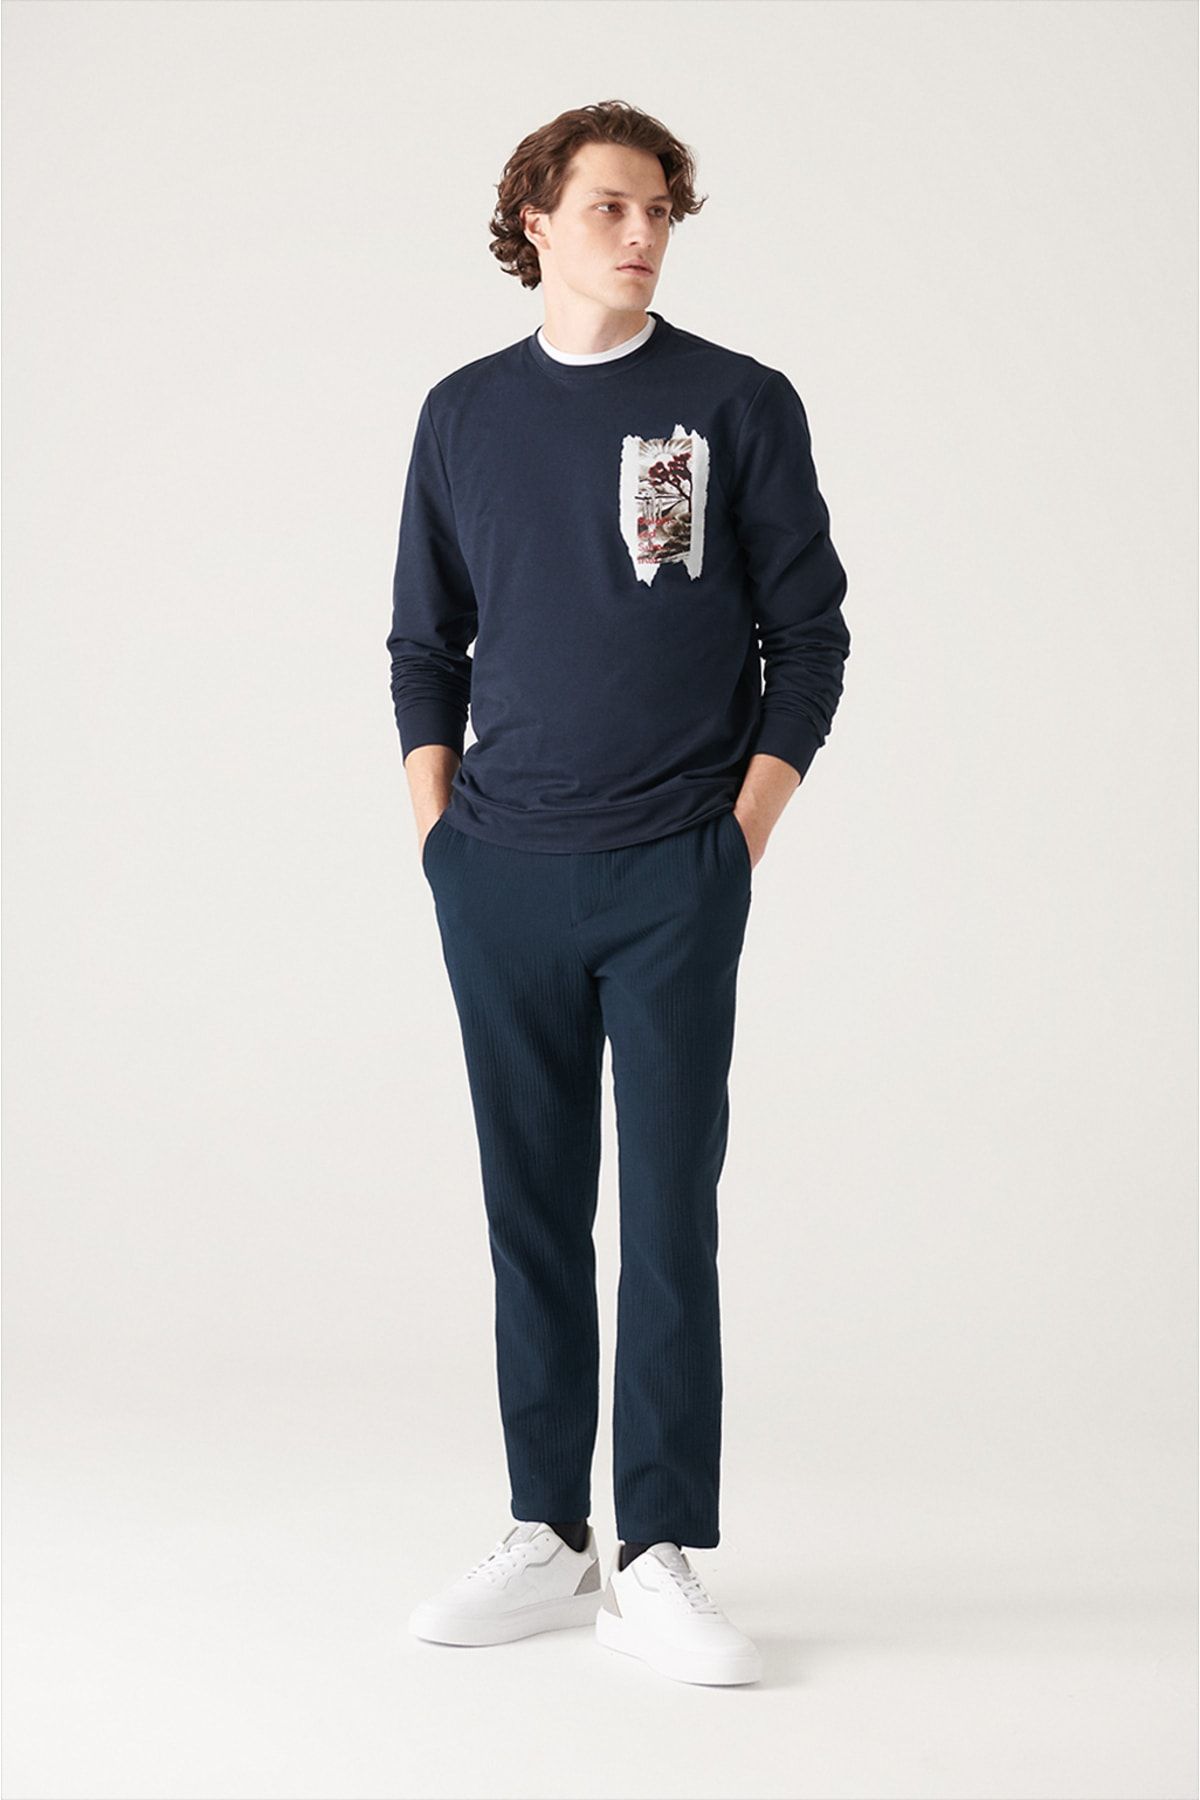 شلوار جاگر آبی سرمه ای جیب دار کمرکش کاپوت دار مدل راسته مردانه آوا Avva (برند ترکیه)